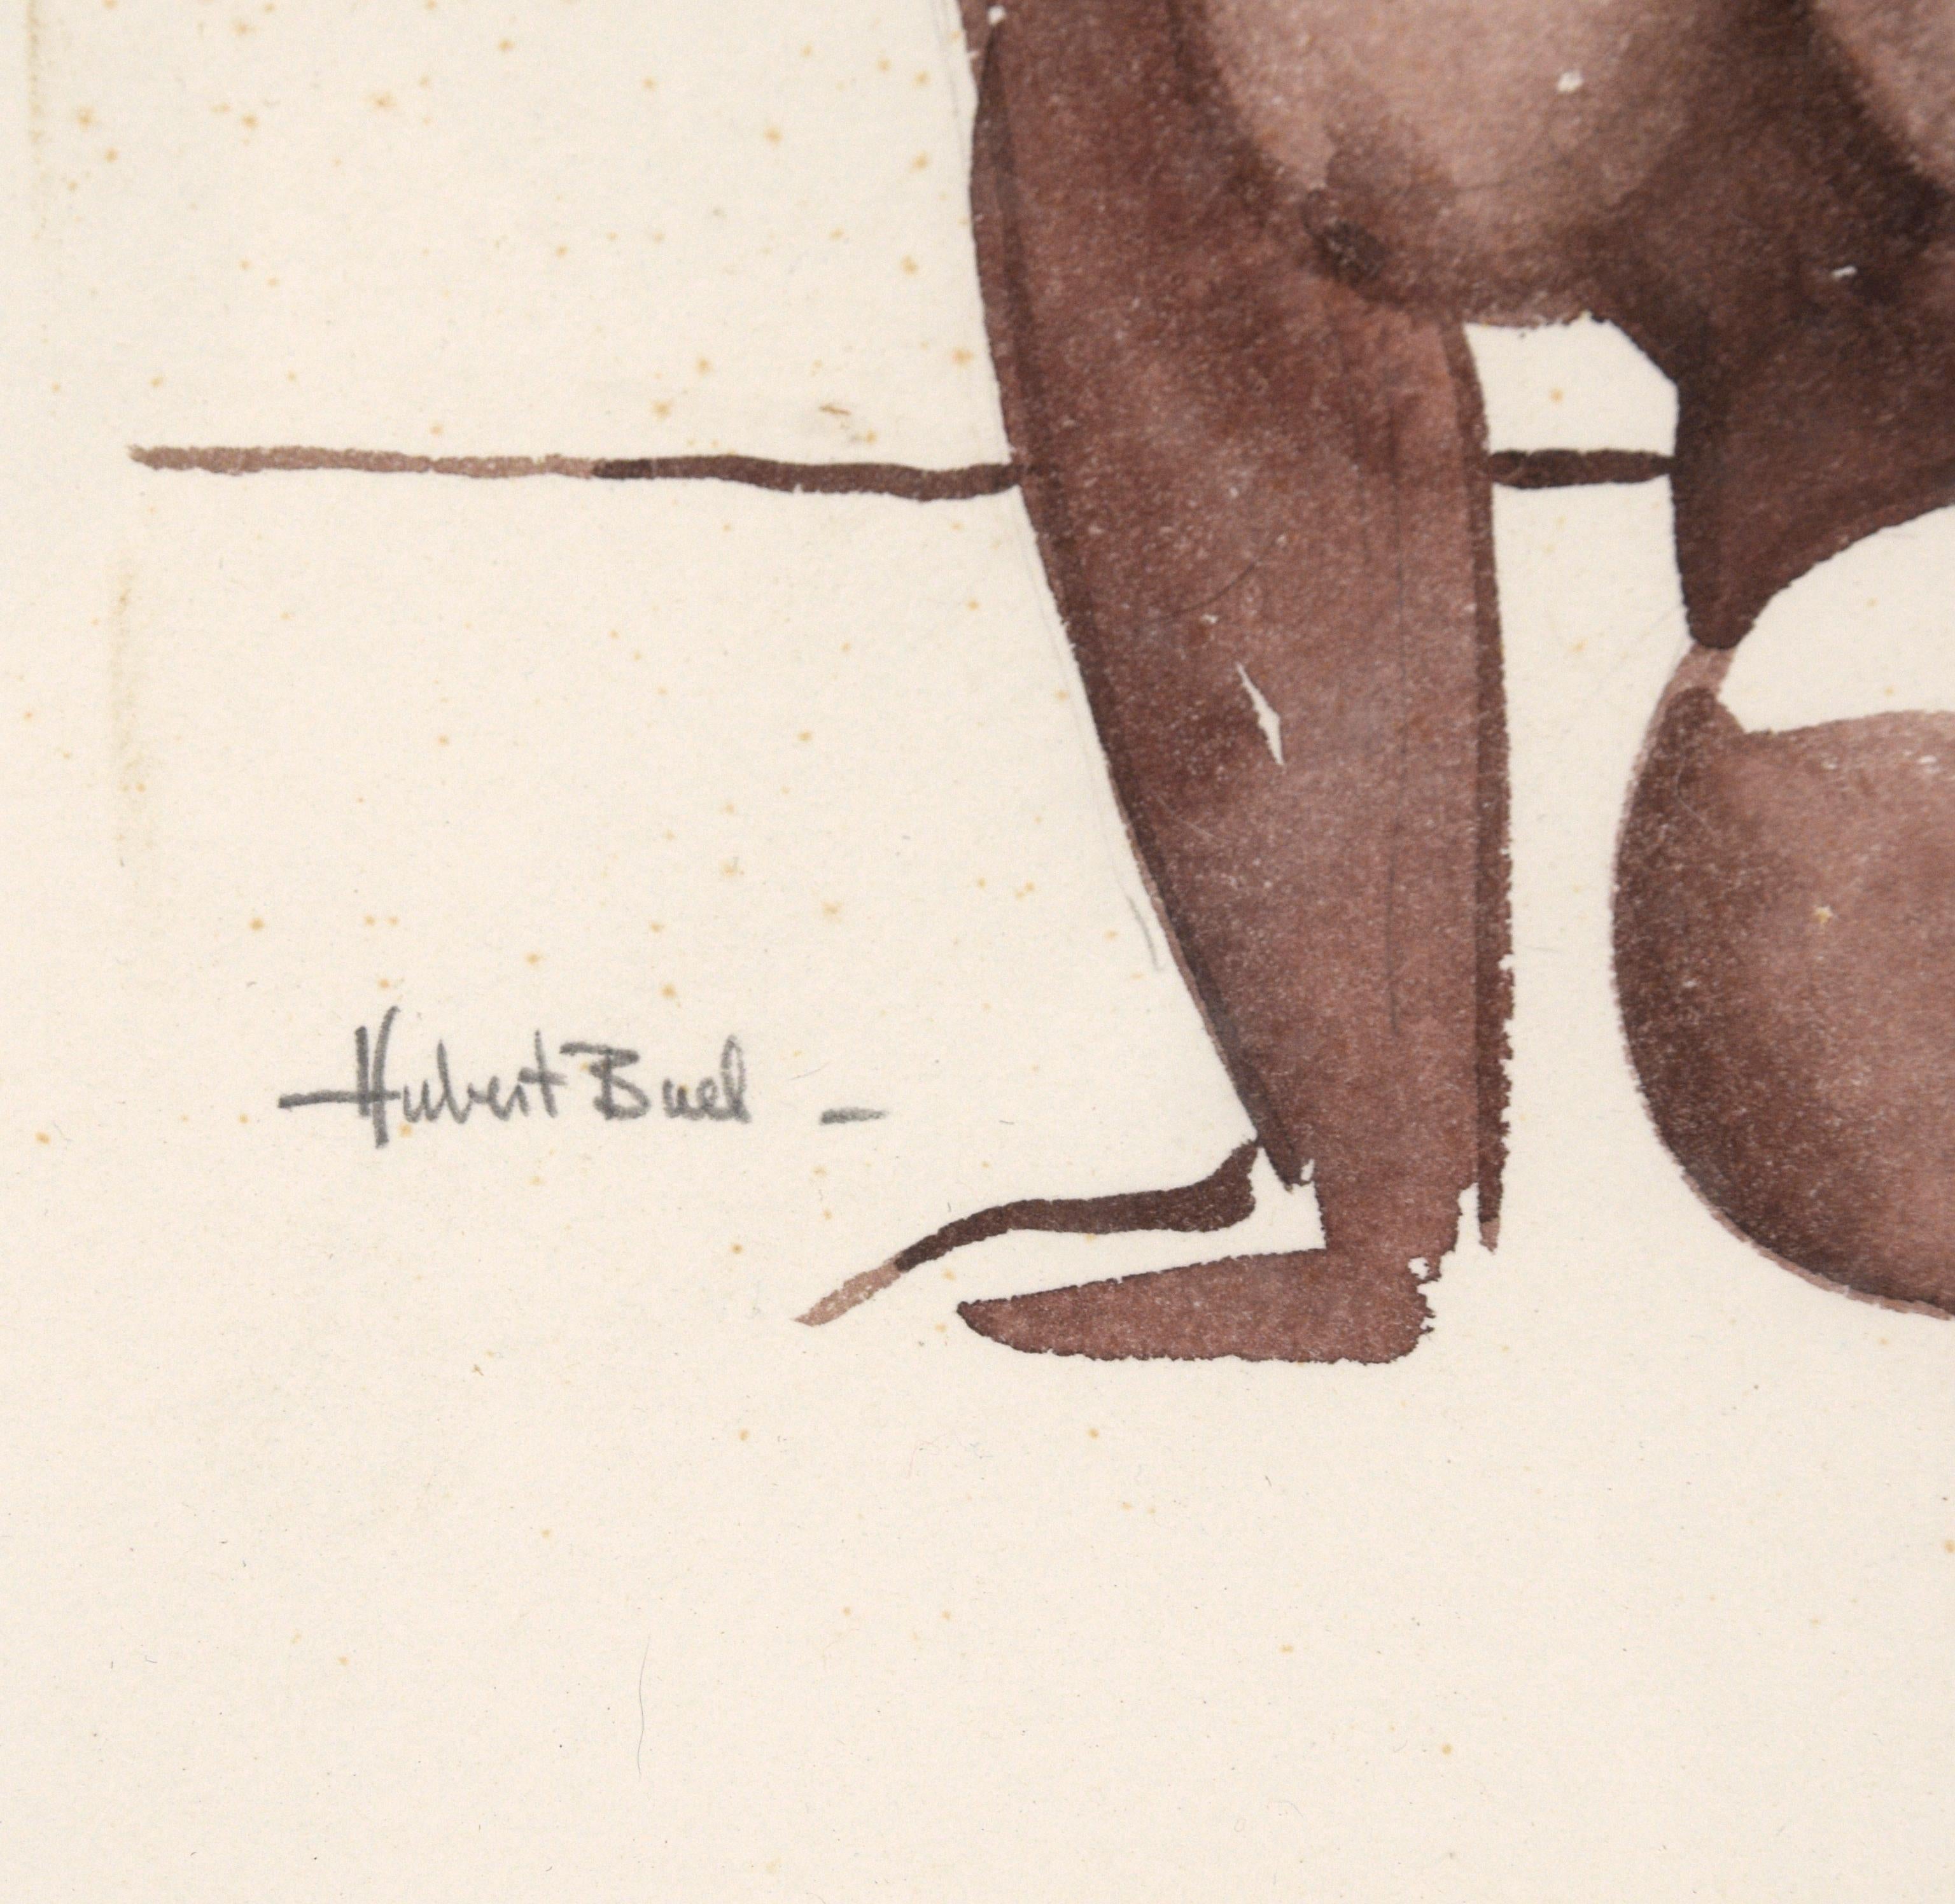 Aquarellierte Figurenstudie aus der Mitte des Jahrhunderts, eine lebendige Darstellung einer liegenden nackten Frau des Bay Area Figurative Movement Künstlers Hubert Buel (Amerikaner, 1915-1984). Signiert in der unteren linken Ecke. Präsentiert in